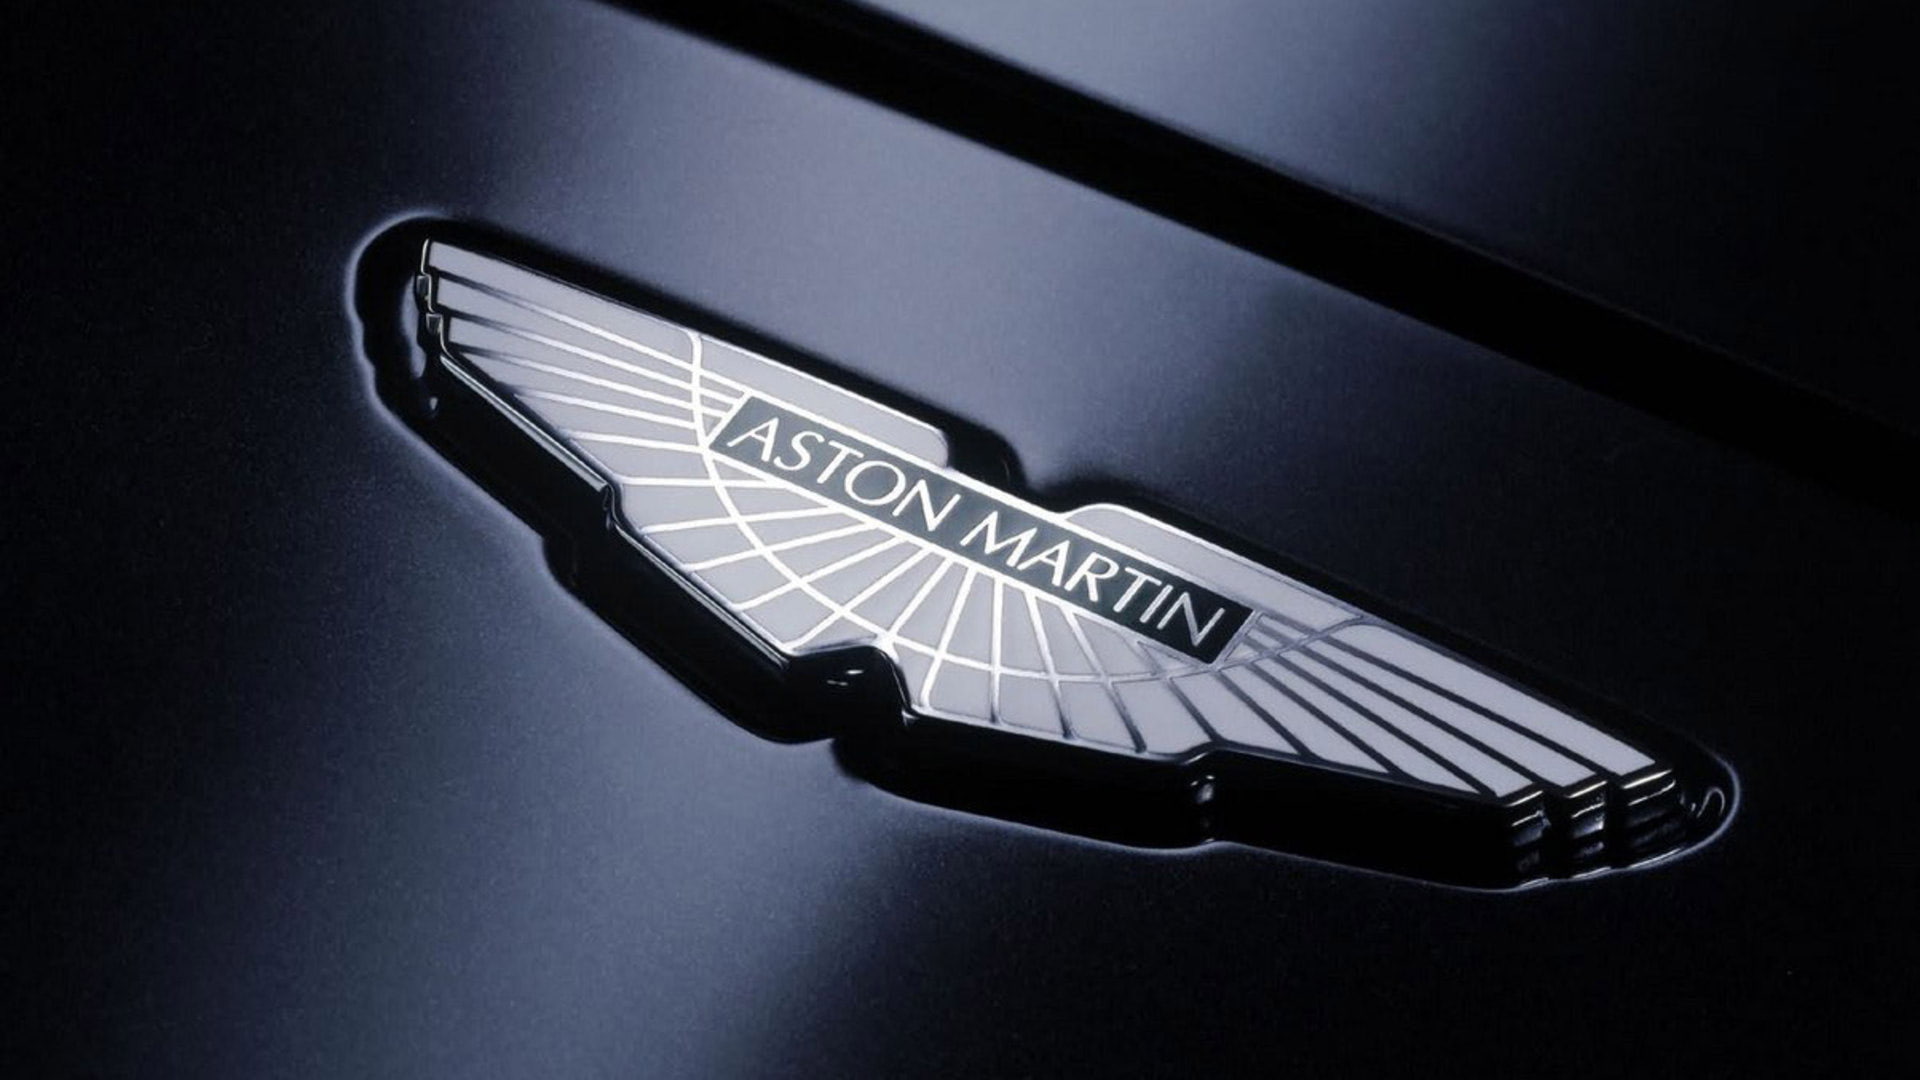 Aston Martin HD, car, logo